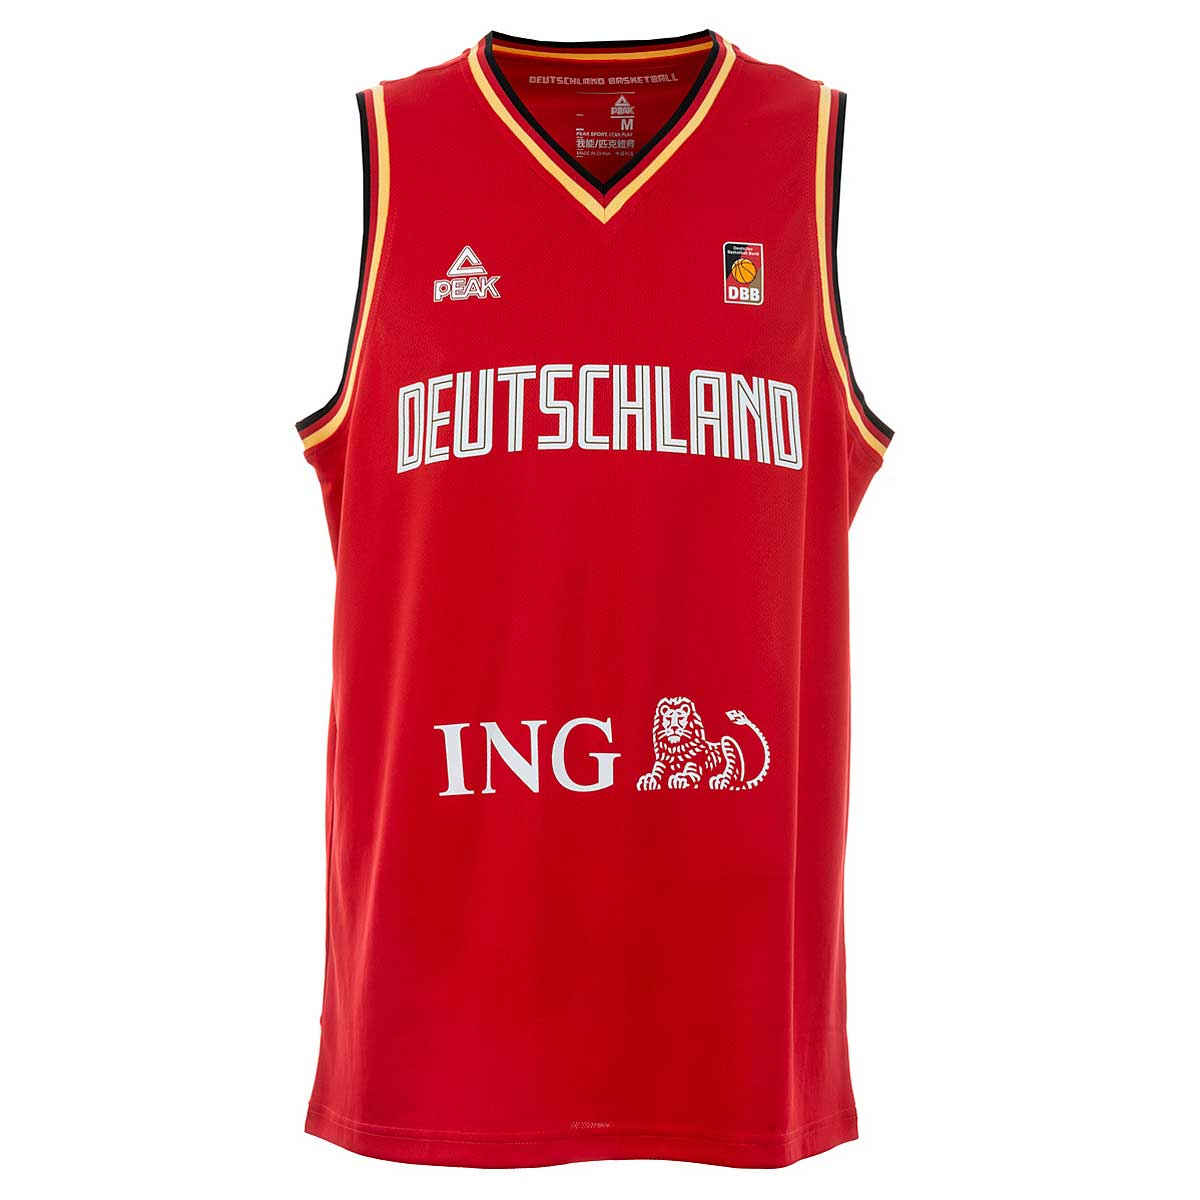 Image of Peak Dbb Deutschland Basketball Trikot Rot, Red